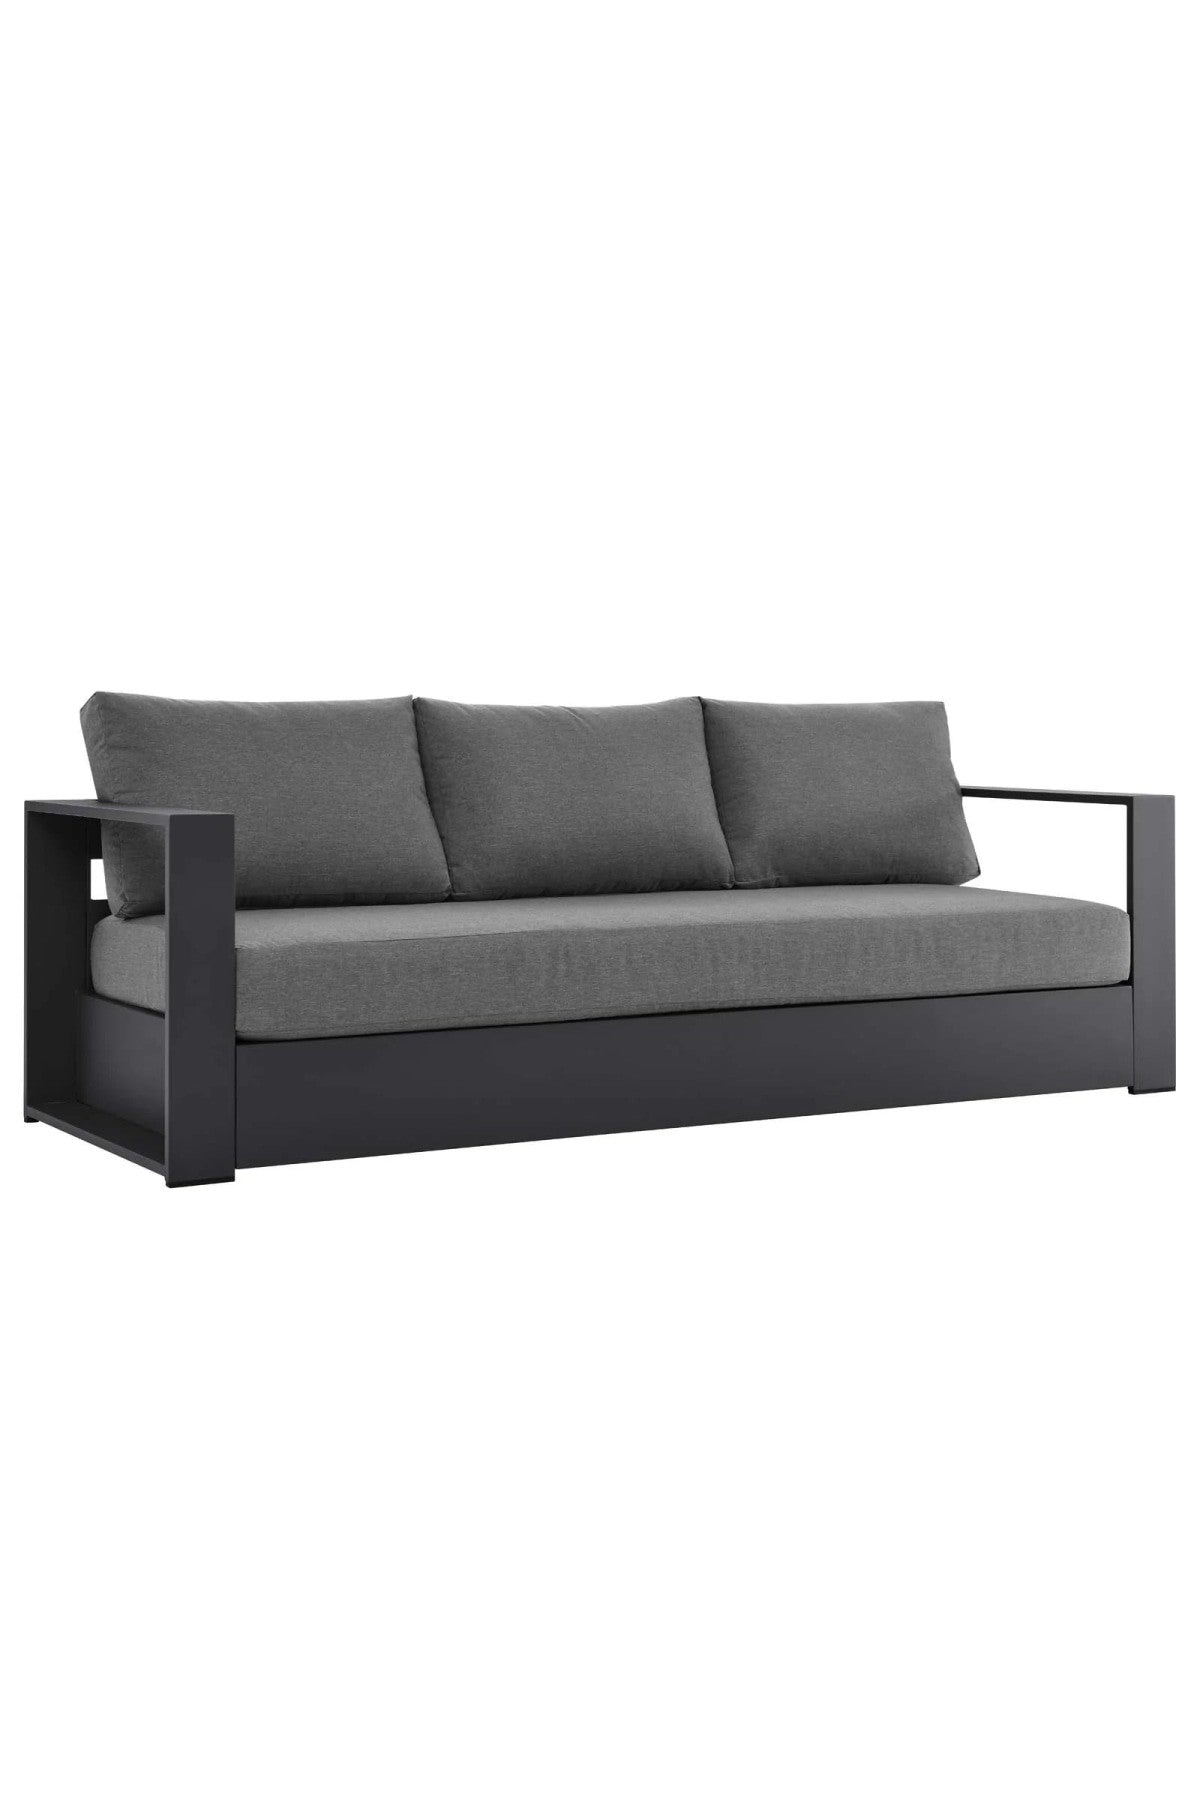 Cisco Outdoor Sofa